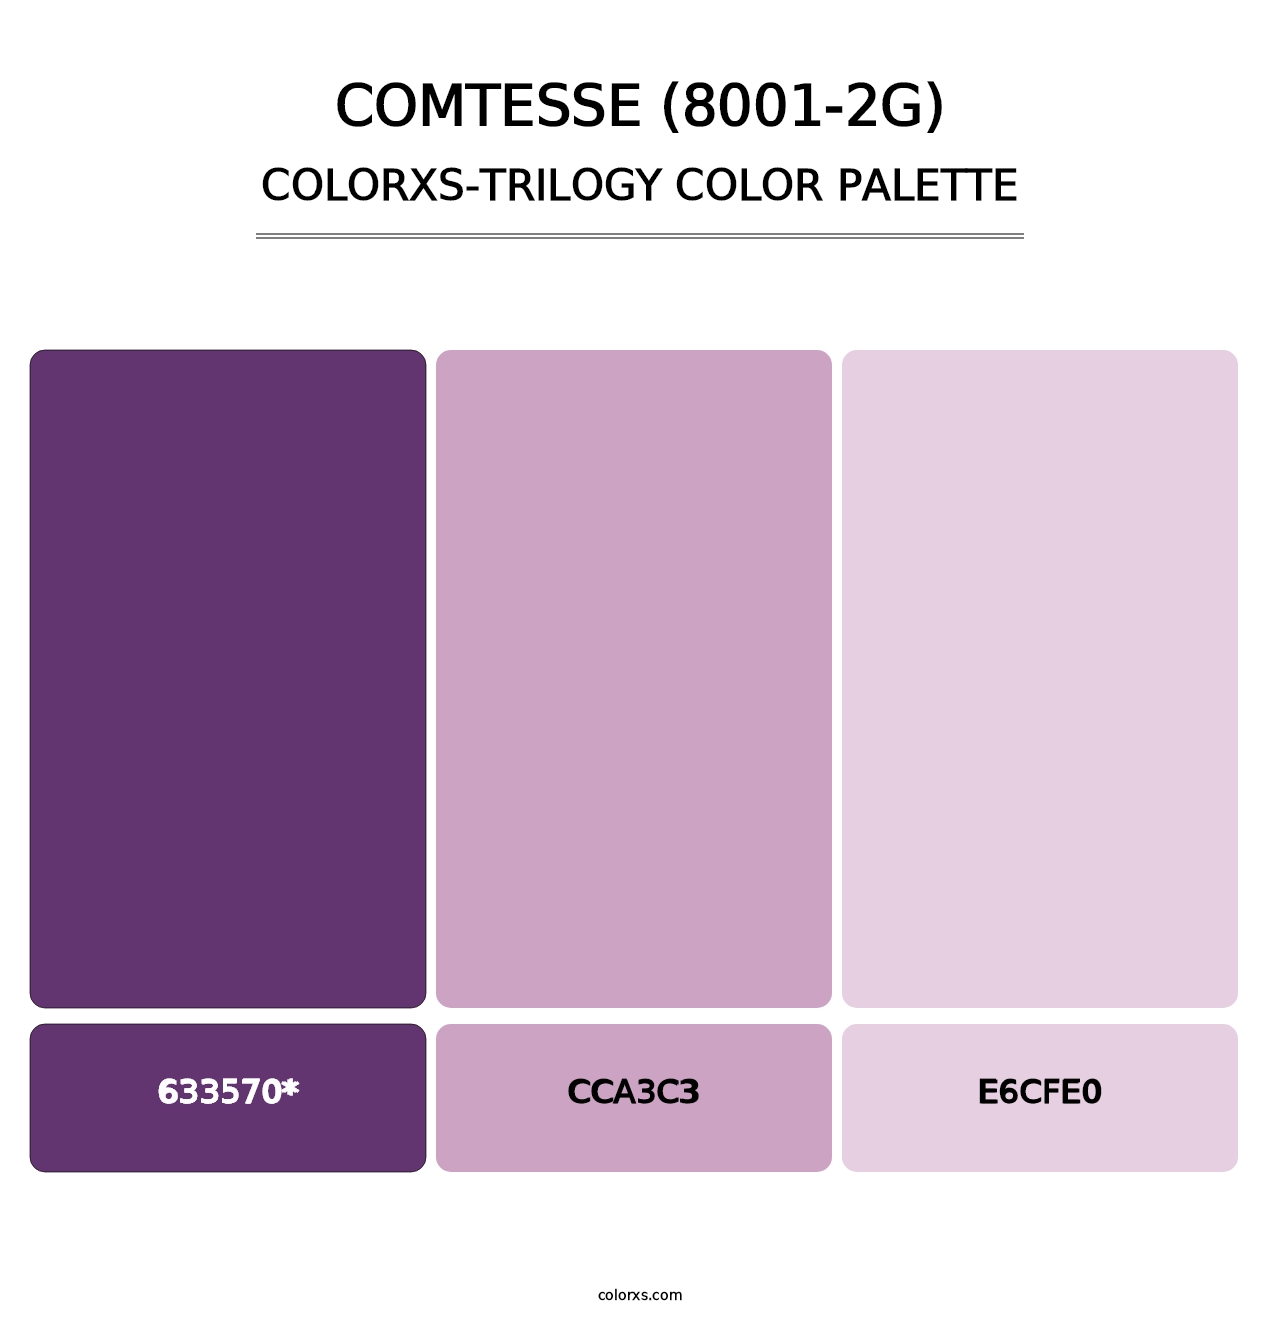 Comtesse (8001-2G) - Colorxs Trilogy Palette